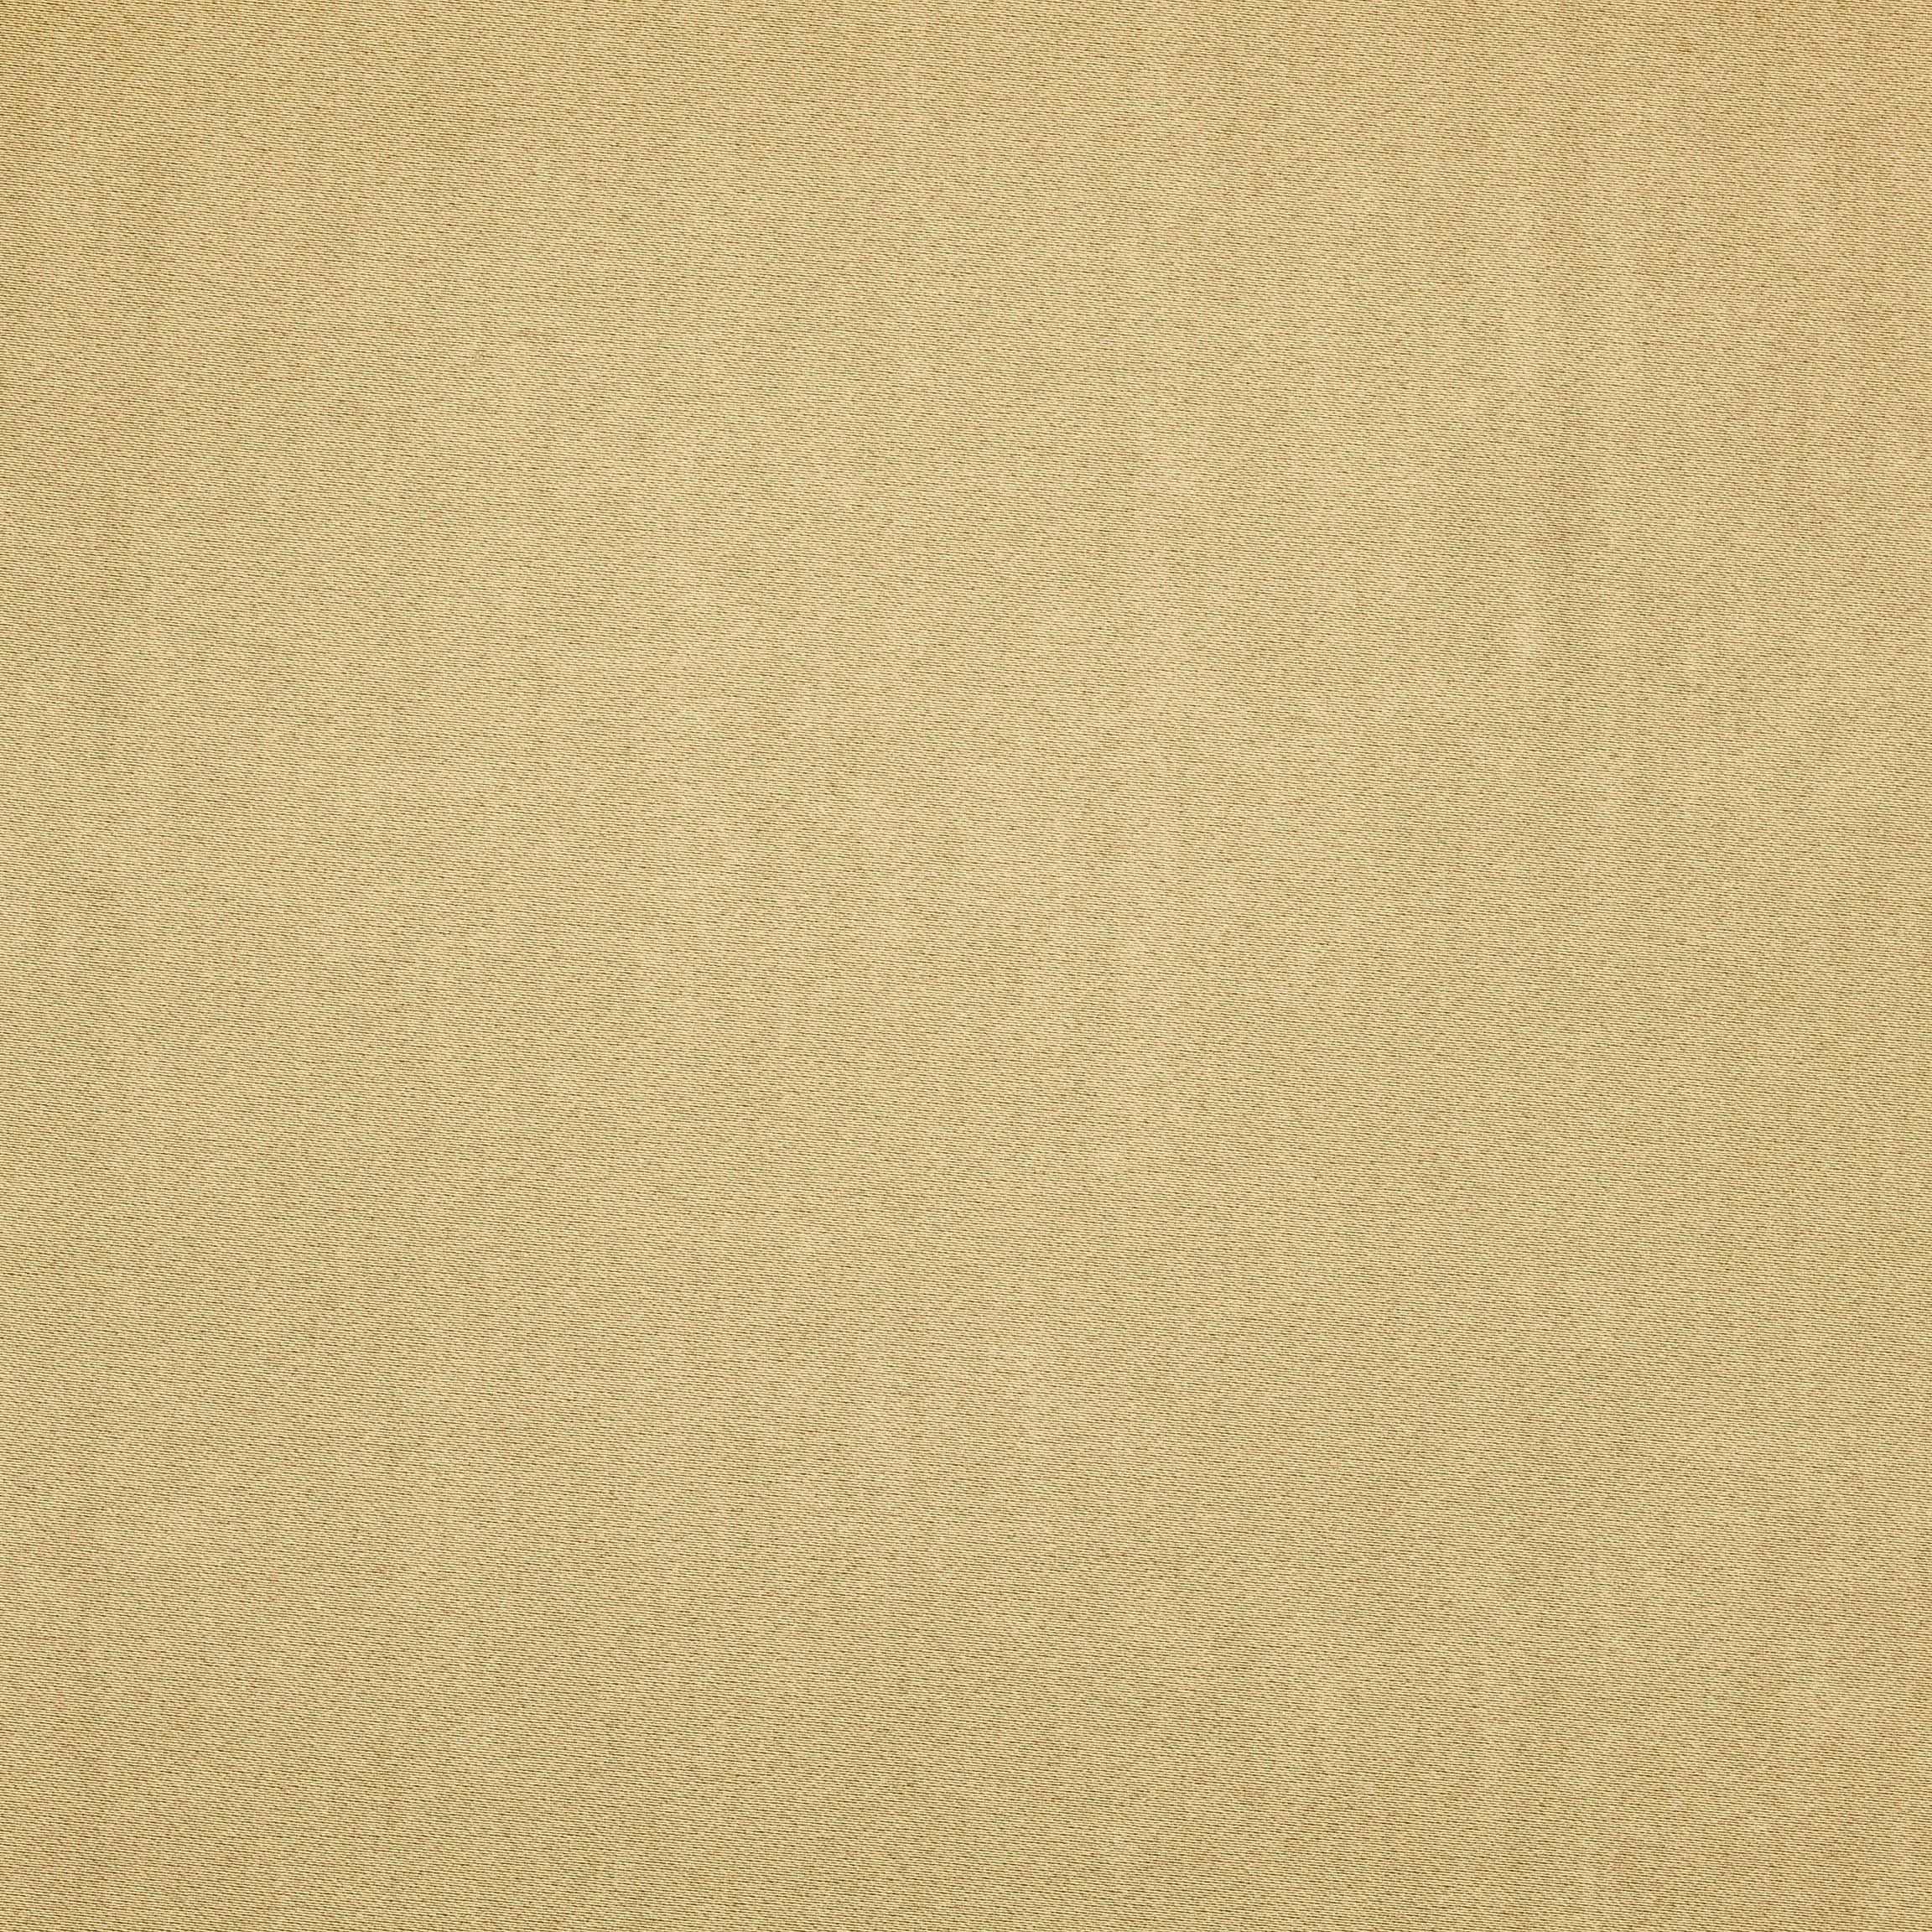  Портьерная ткань MONTREAL OLIVE, ширина 280 см  - Фото